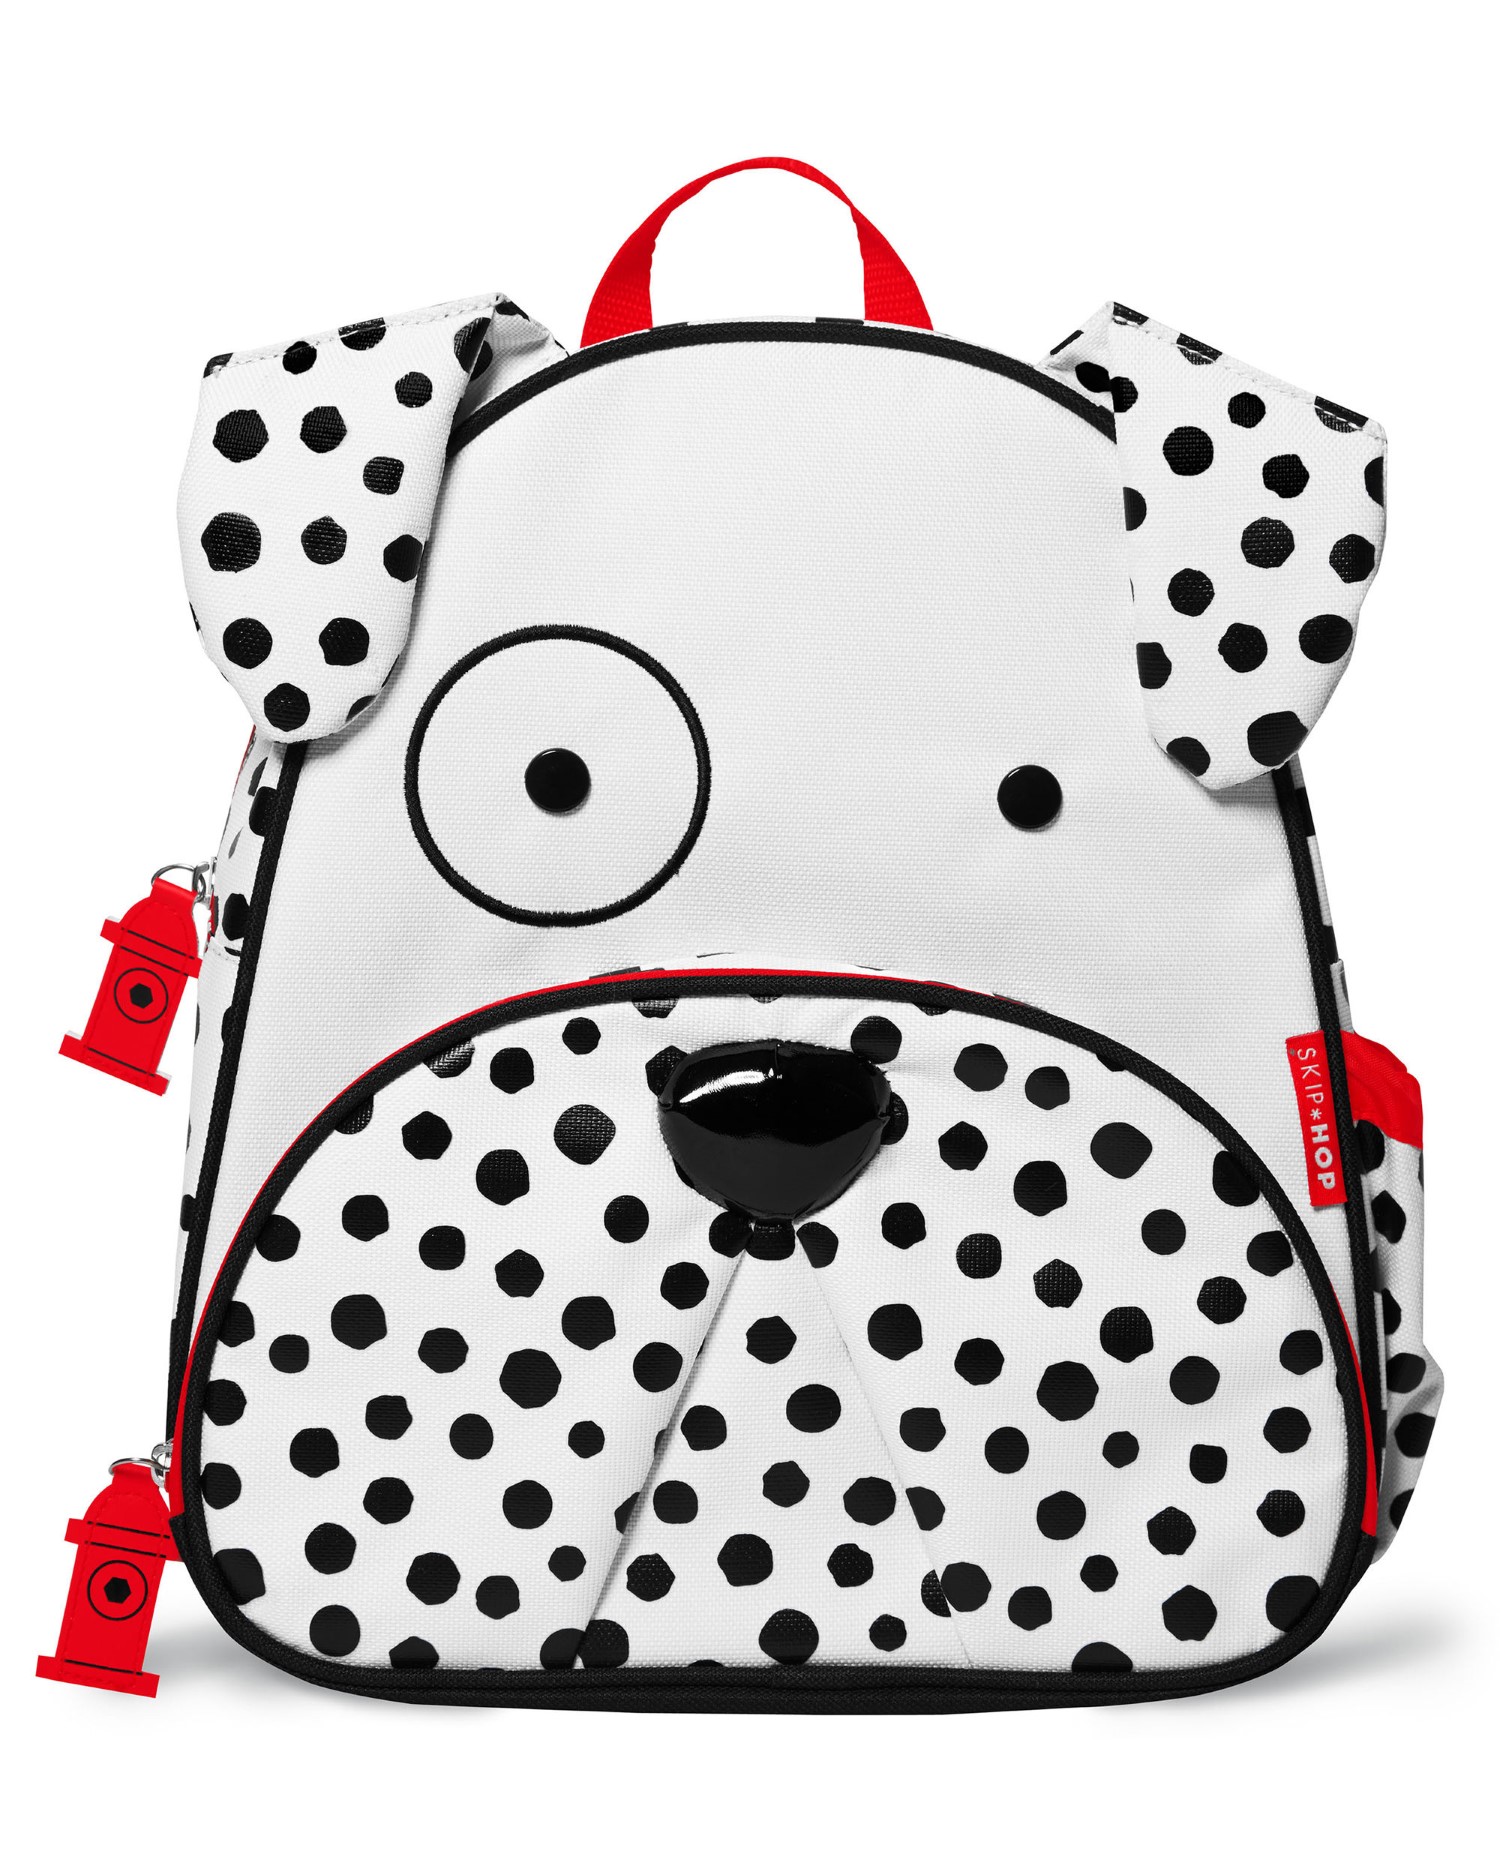 Skip Hop Zoo Kids Backpack Dalmatian